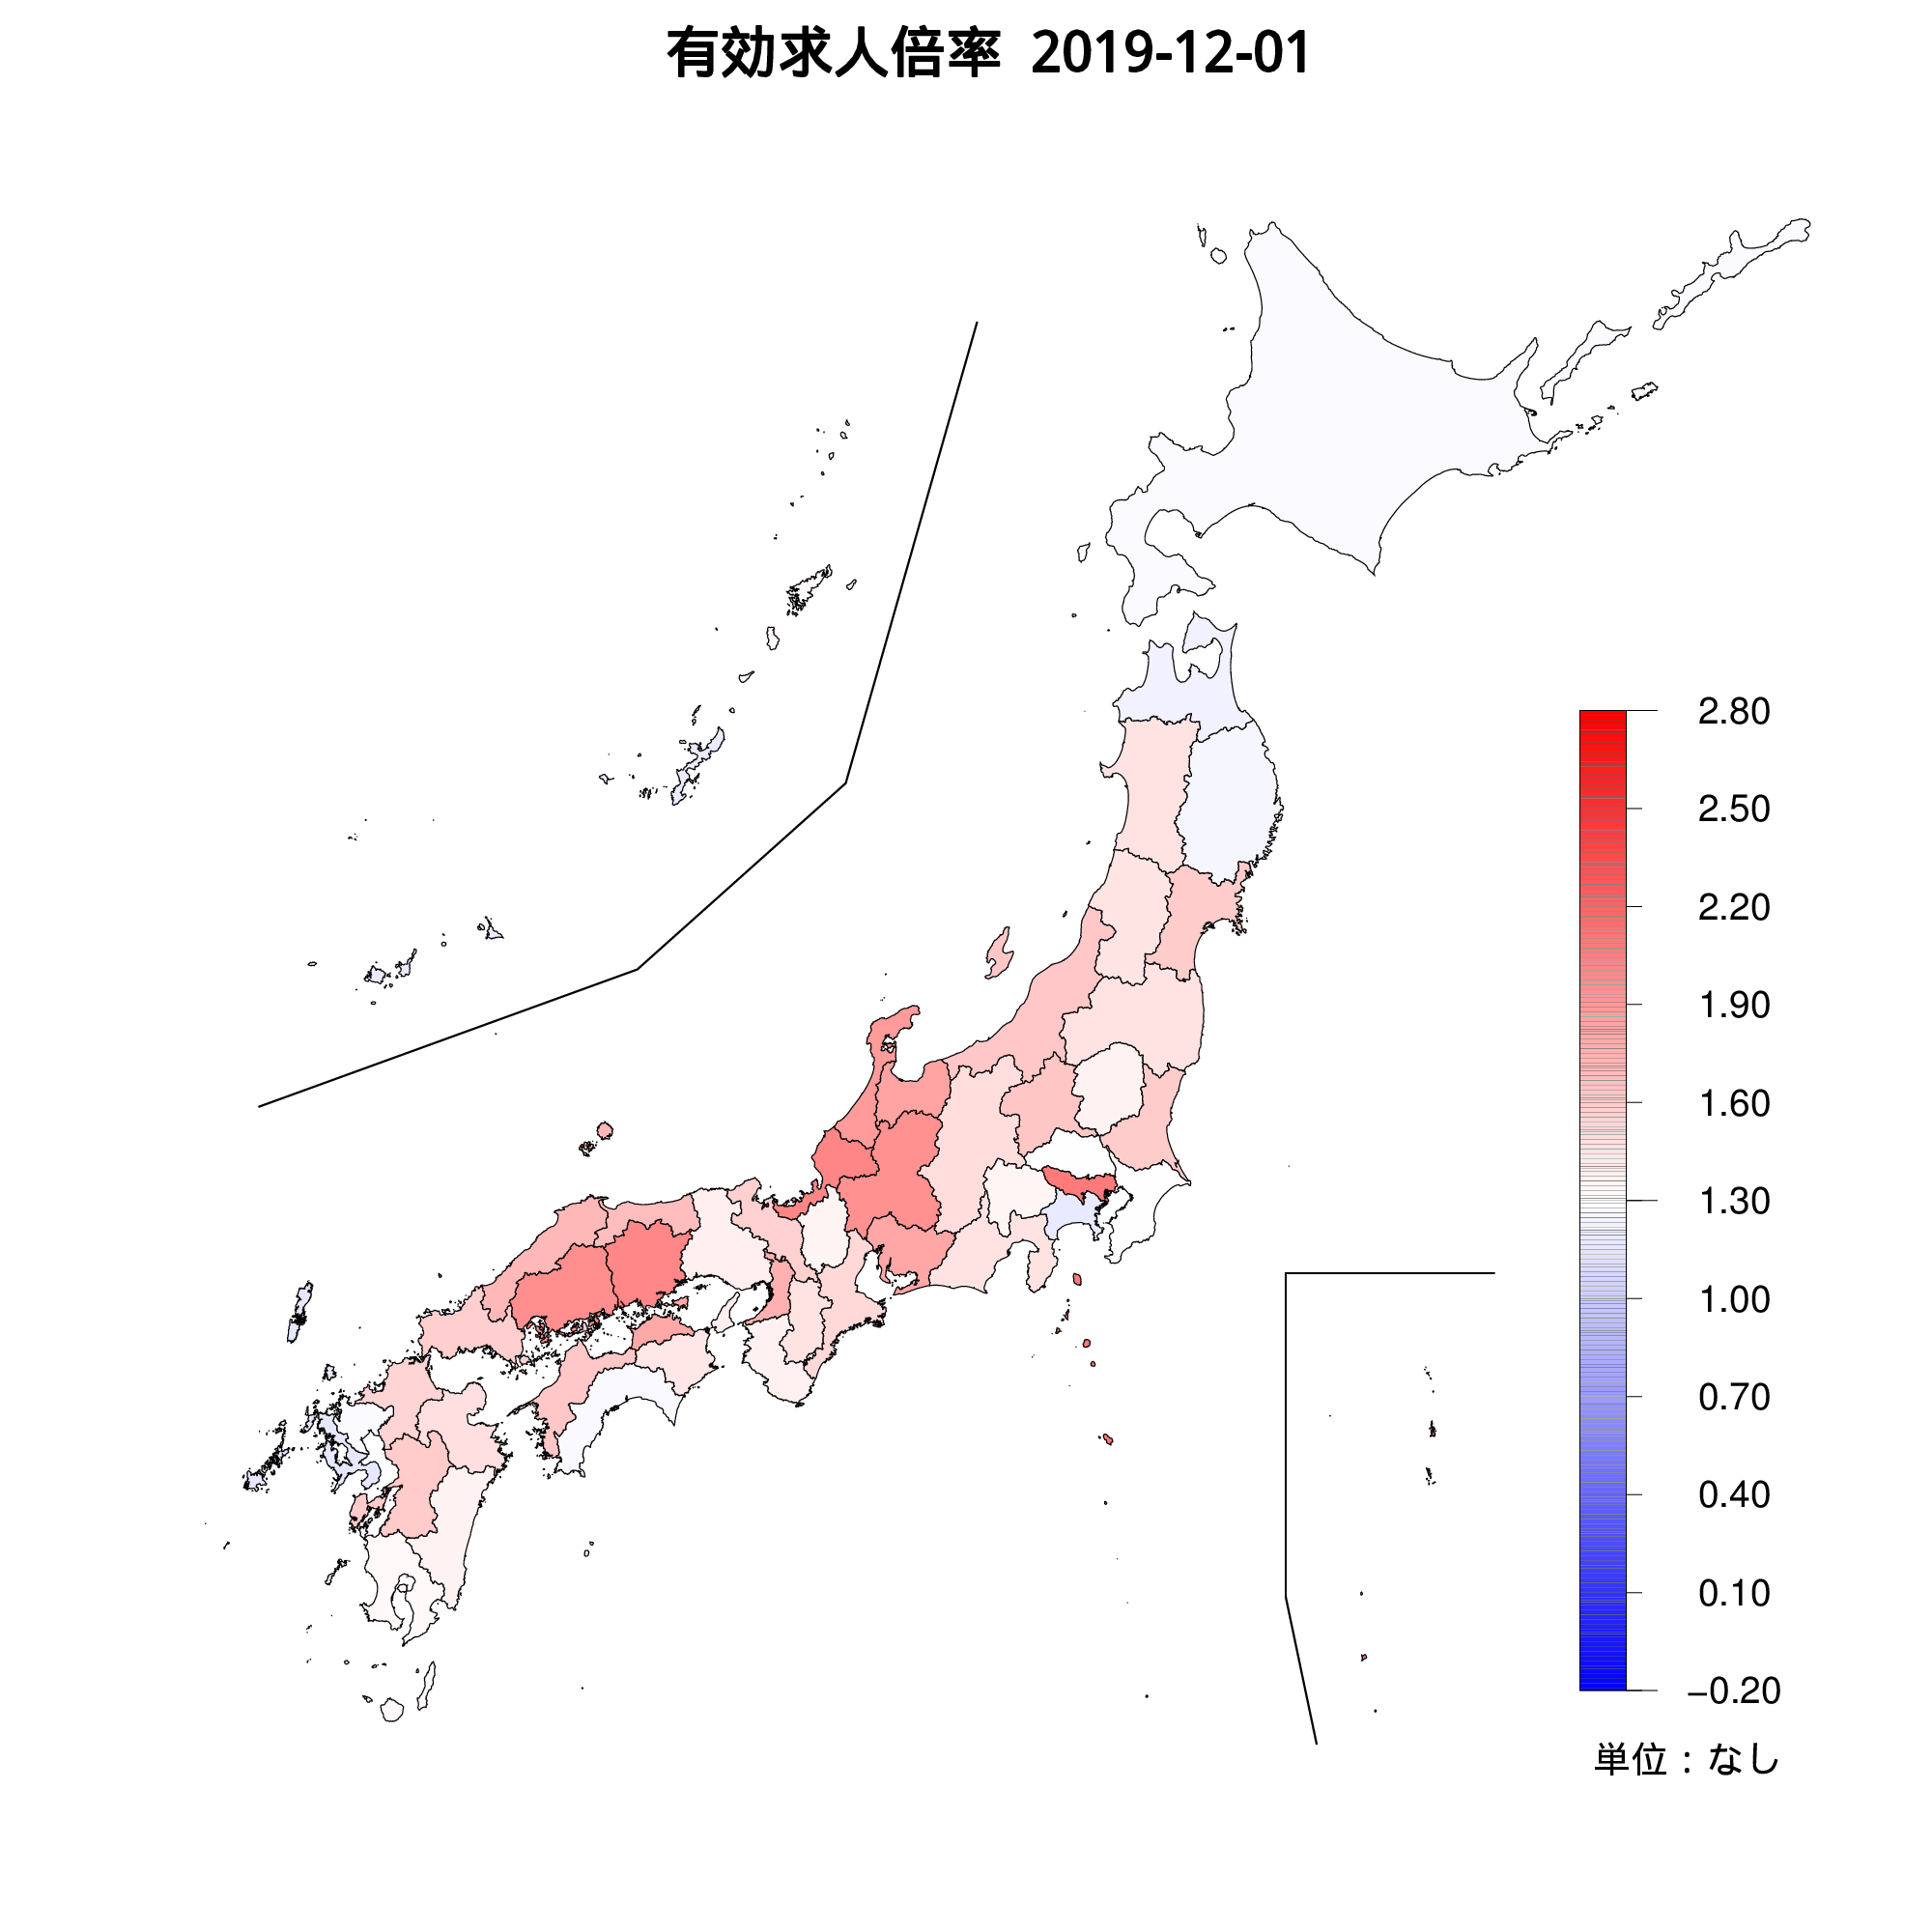 各都道府県の有効求人倍率を示す地図（2019年12月）